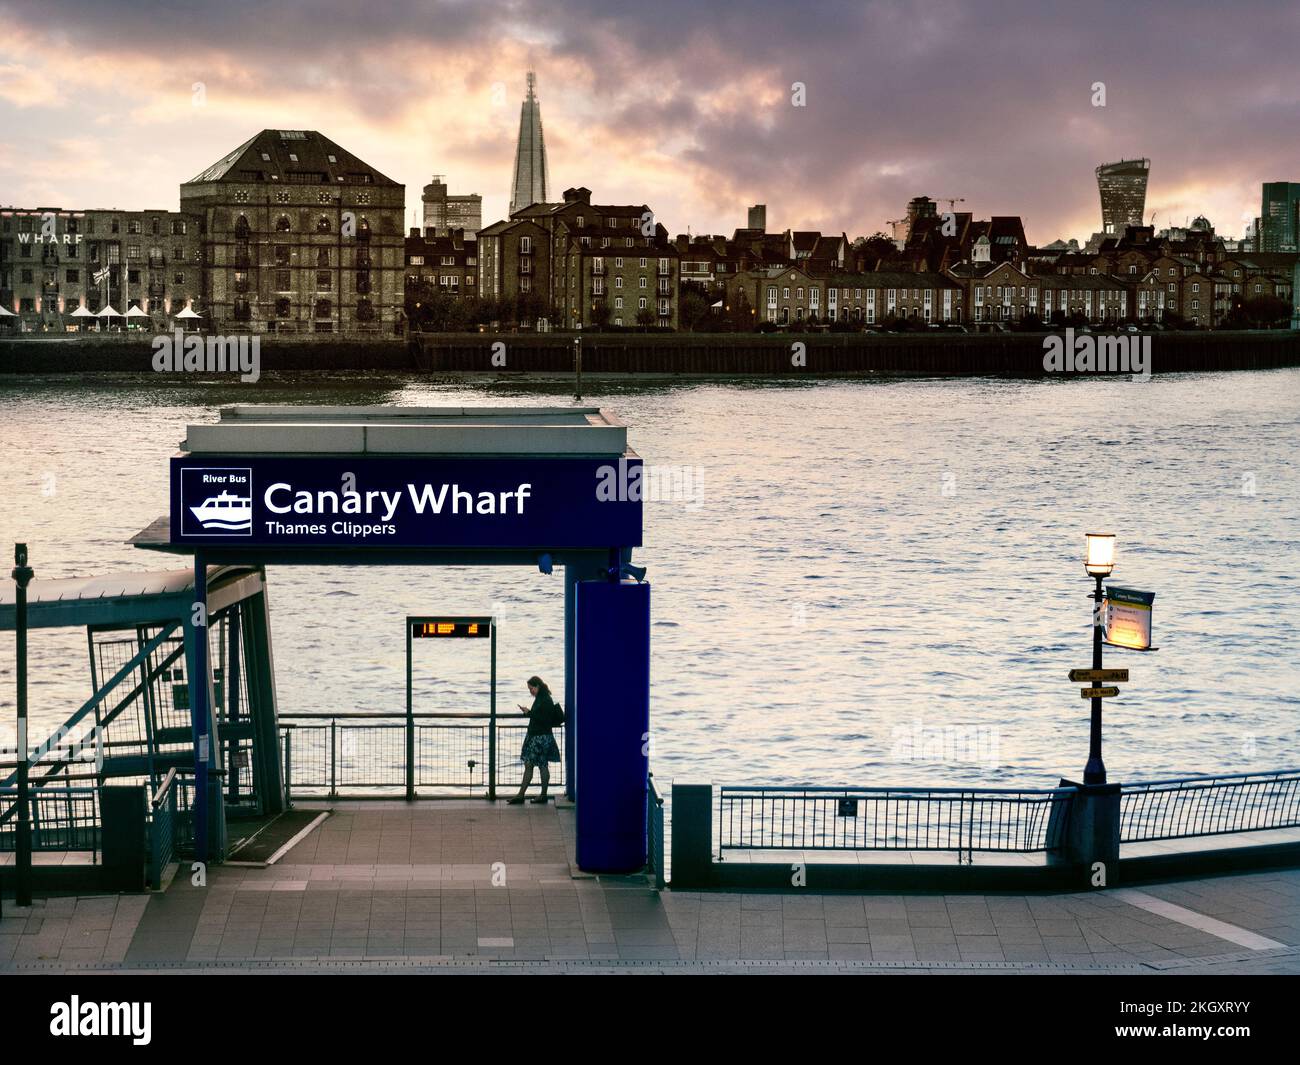 Femme seule utilisant un smartphone au coucher du soleil sur la jetée de Canary Wharf River Boat avec London Shard et le bâtiment Walkie Talkie en arrière-plan Londres E14 Banque D'Images